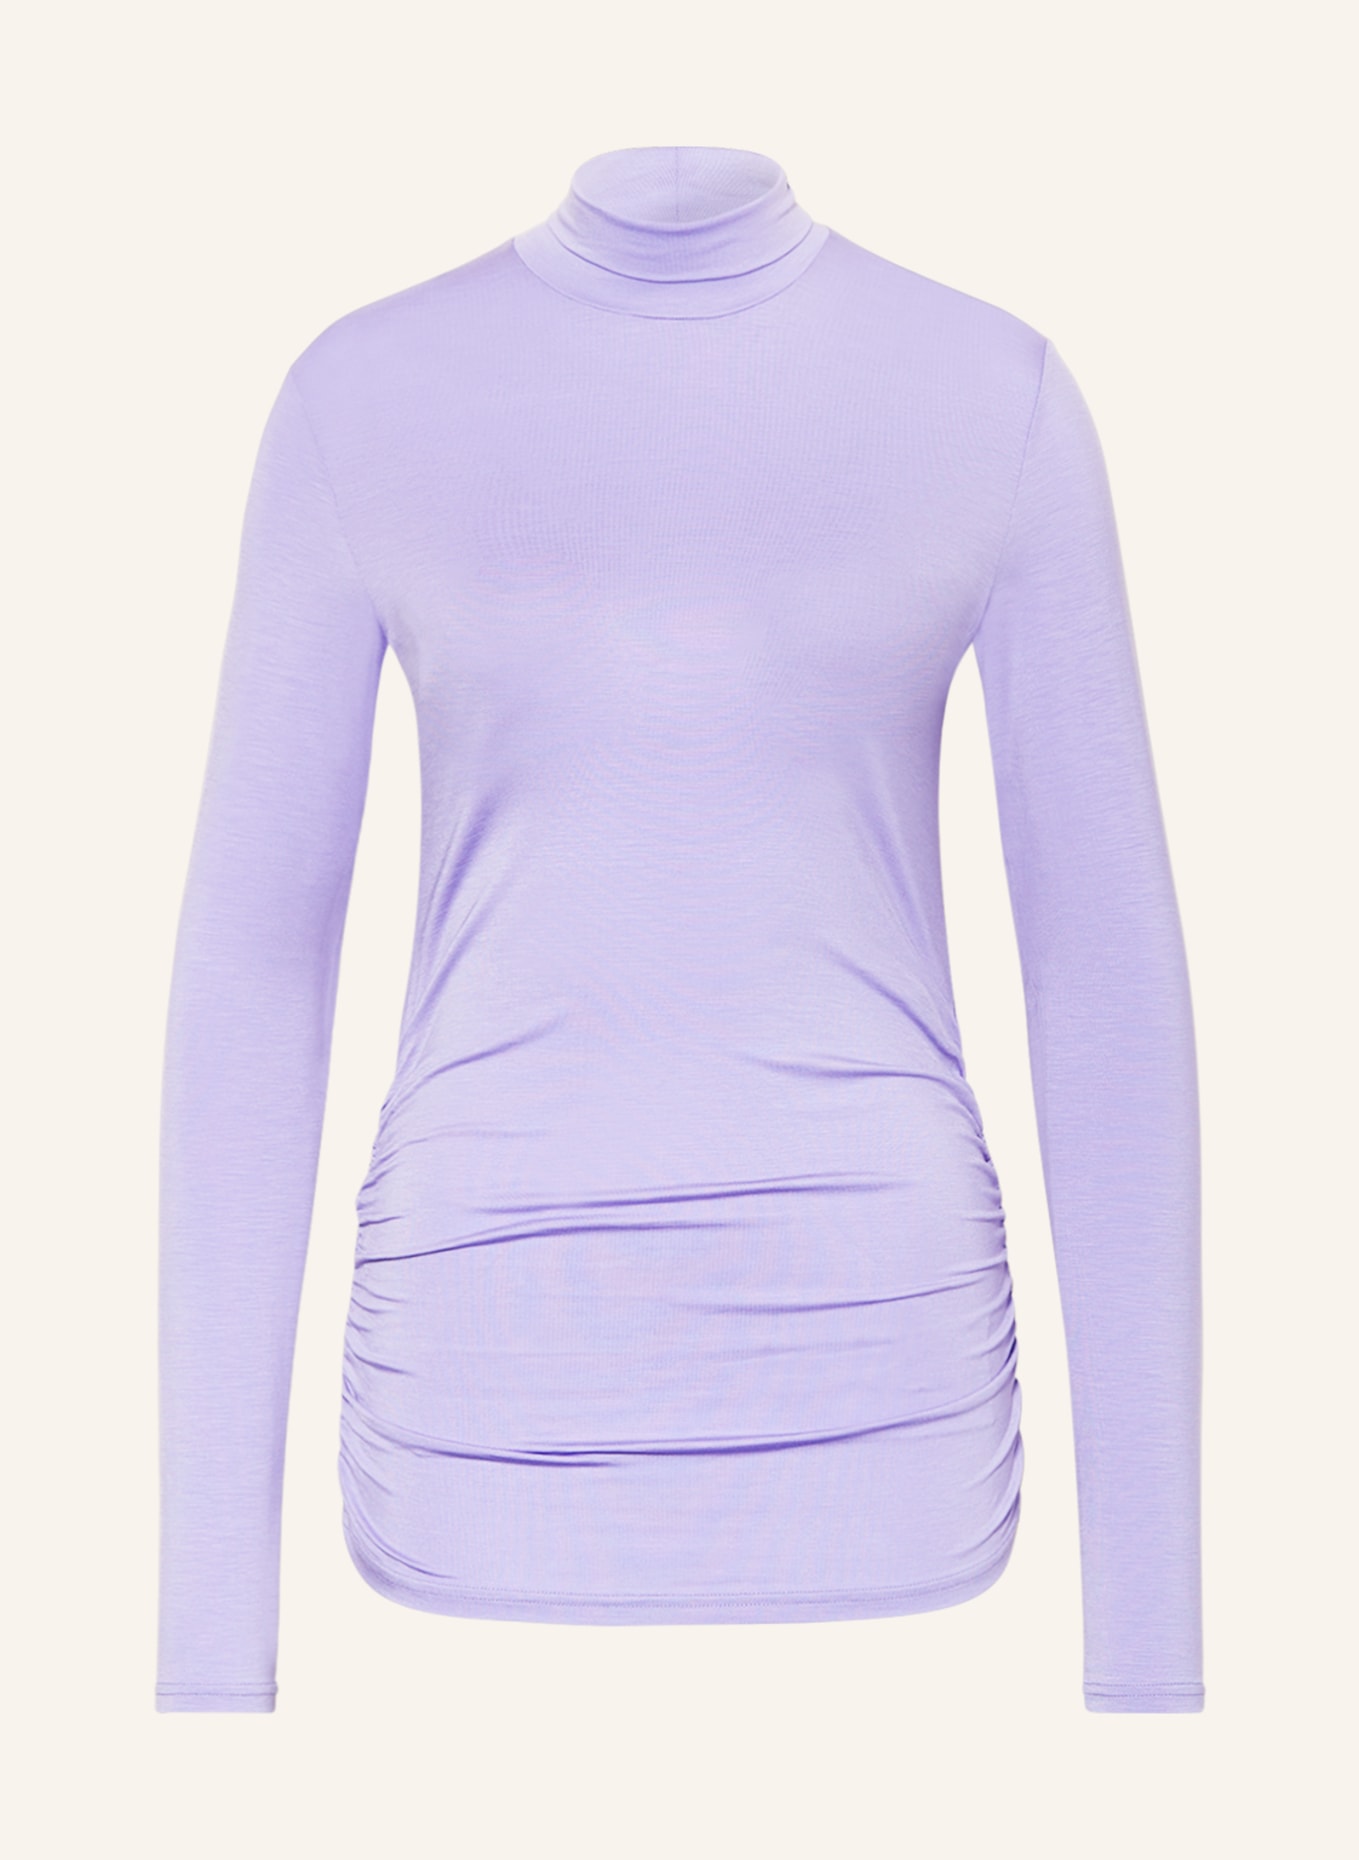 BEAUMONT Turtleneck shirt PHOEBE, Color: LIGHT PURPLE (Image 1)